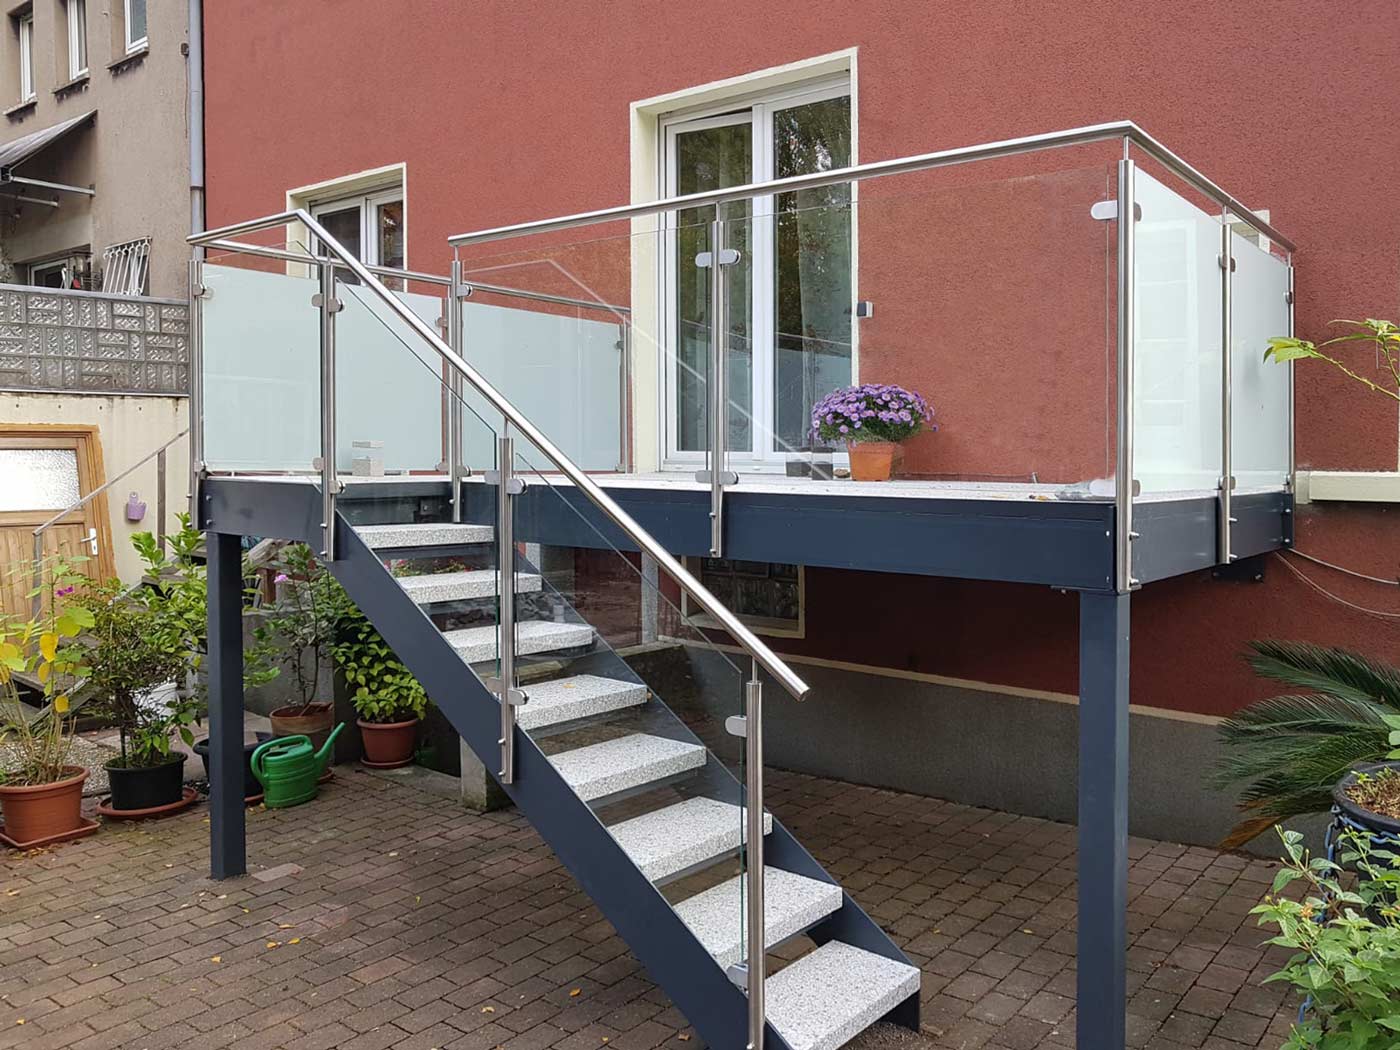 Balkon mit Treppe in Gelsenkirchen, geplant und umgesetzt von der Edelstahlschlosserei Nappenfeld aus Mülheim